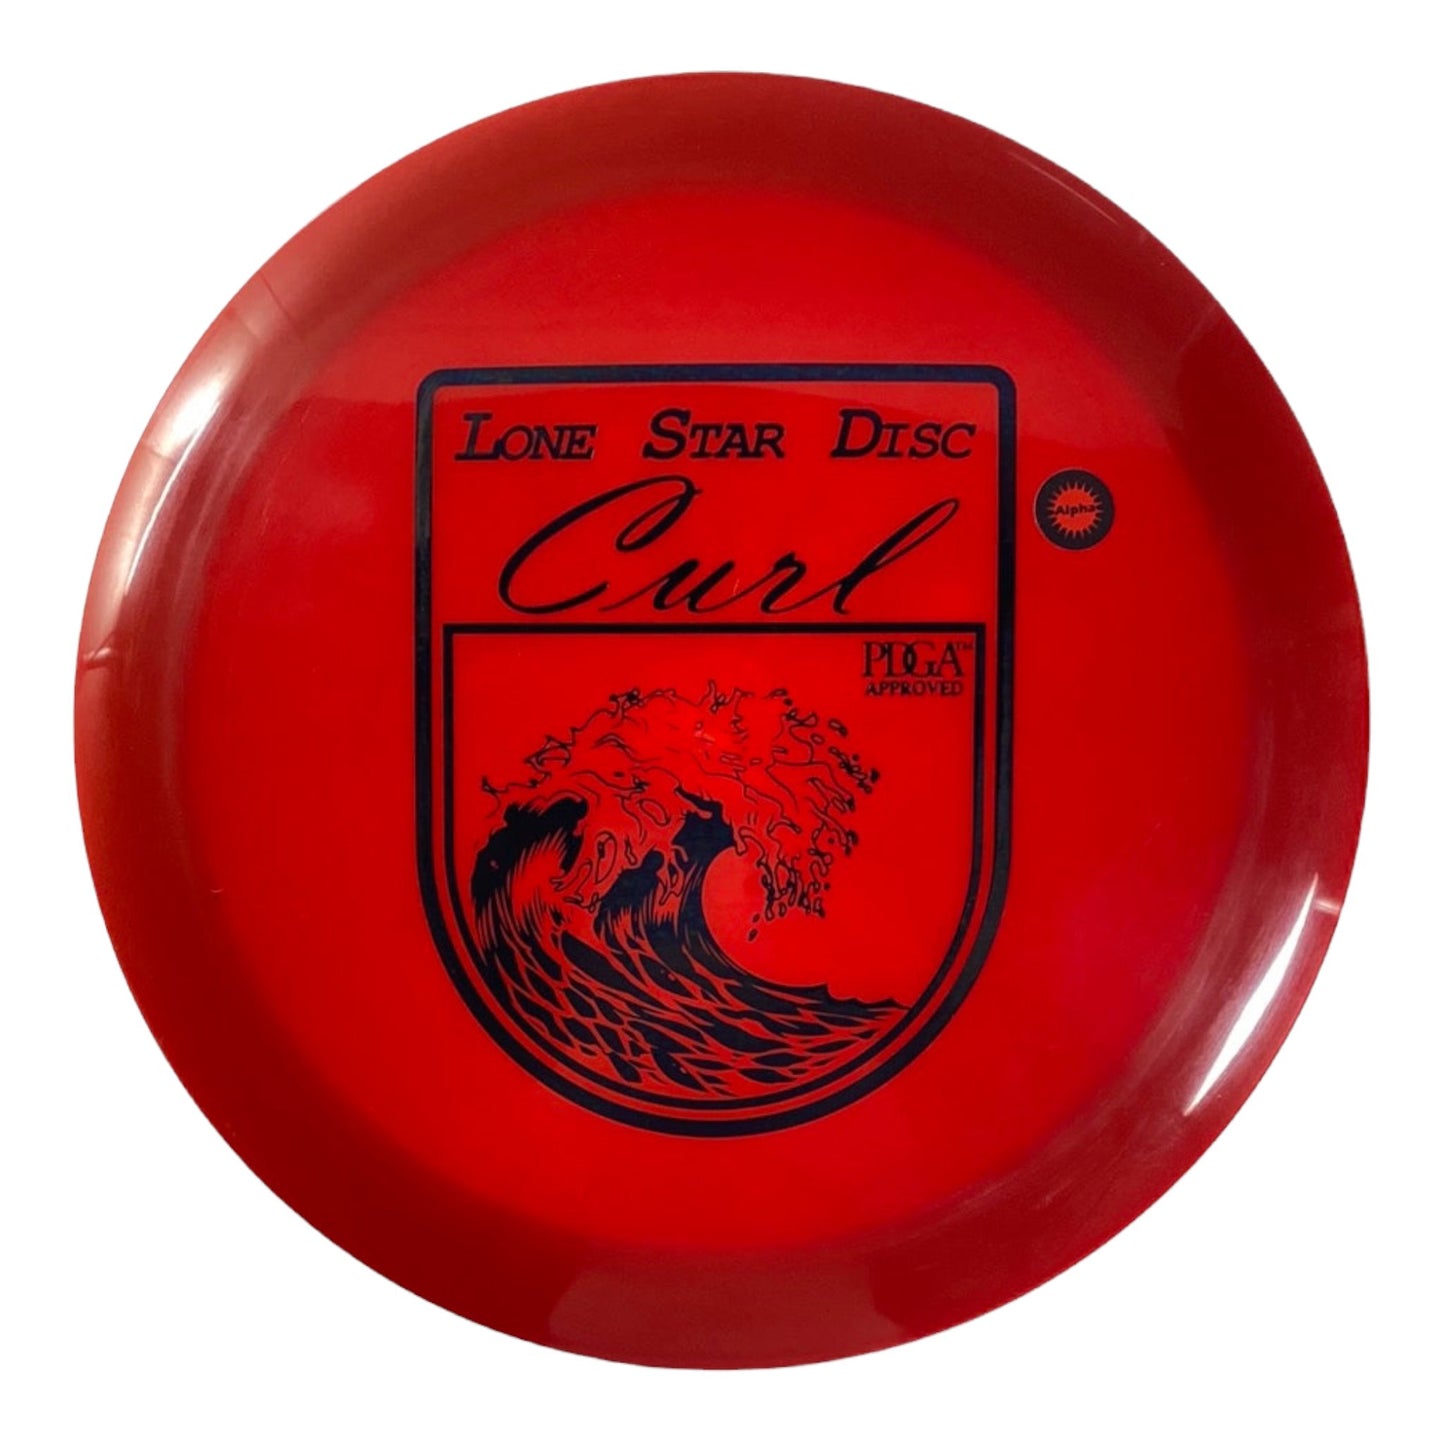 Lone Star Discs Curl | Alpha | Red/Black 175g Disc Golf